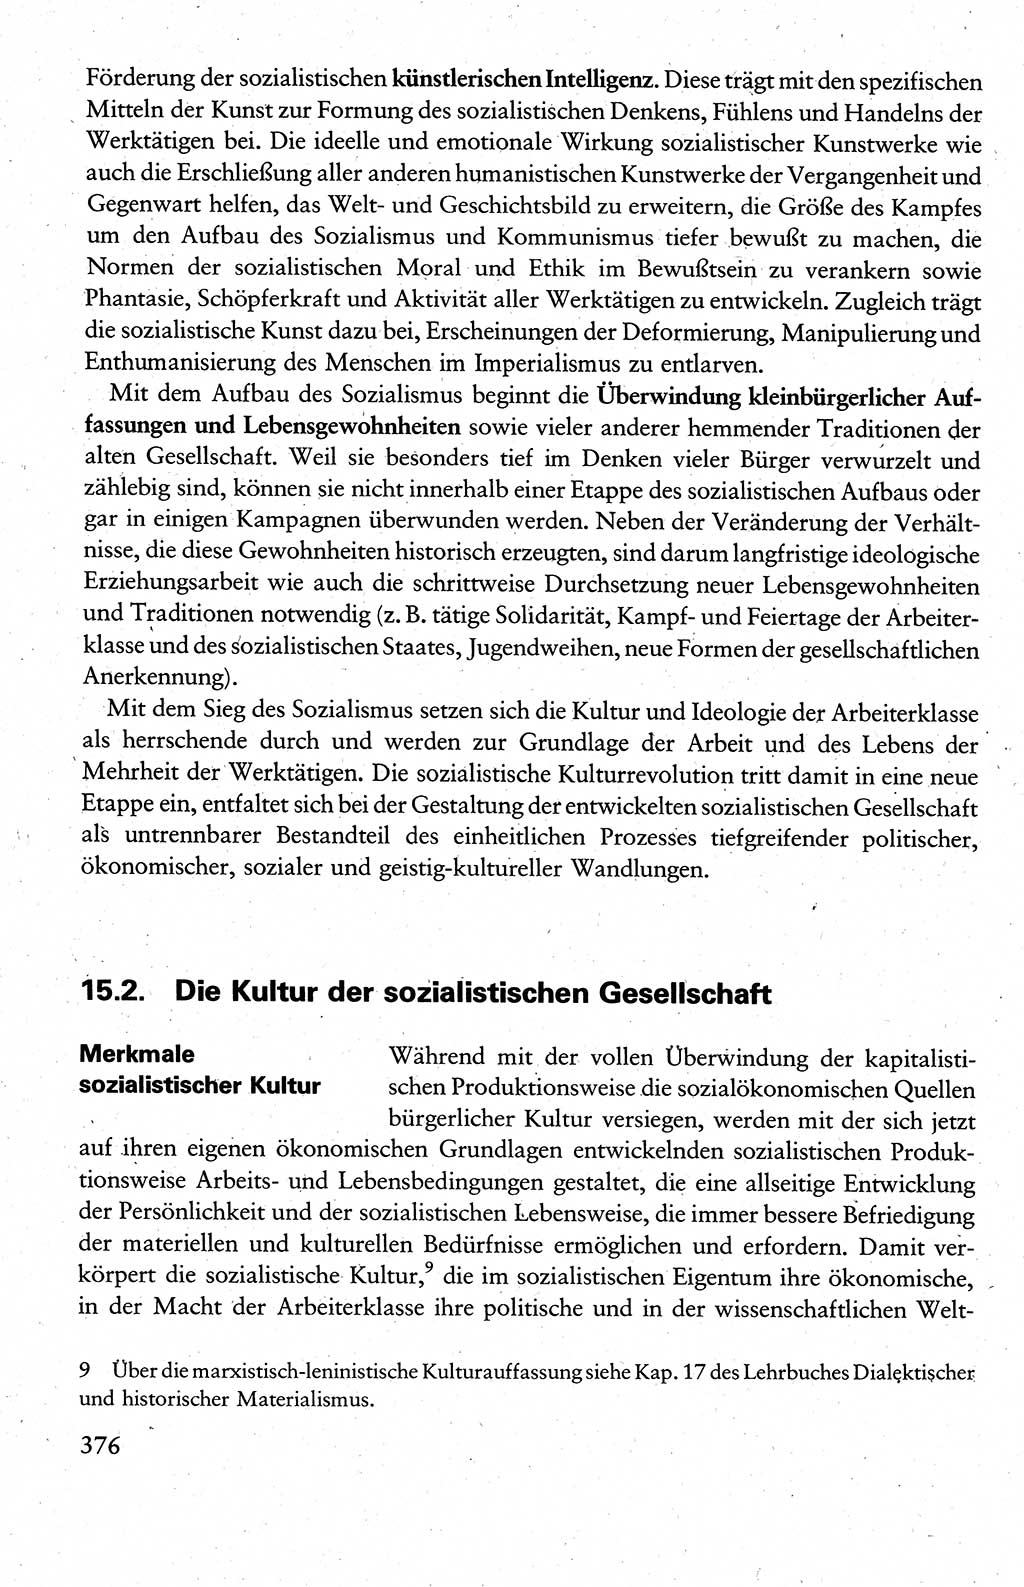 Wissenschaftlicher Kommunismus [Deutsche Demokratische Republik (DDR)], Lehrbuch für das marxistisch-leninistische Grundlagenstudium 1983, Seite 376 (Wiss. Komm. DDR Lb. 1983, S. 376)